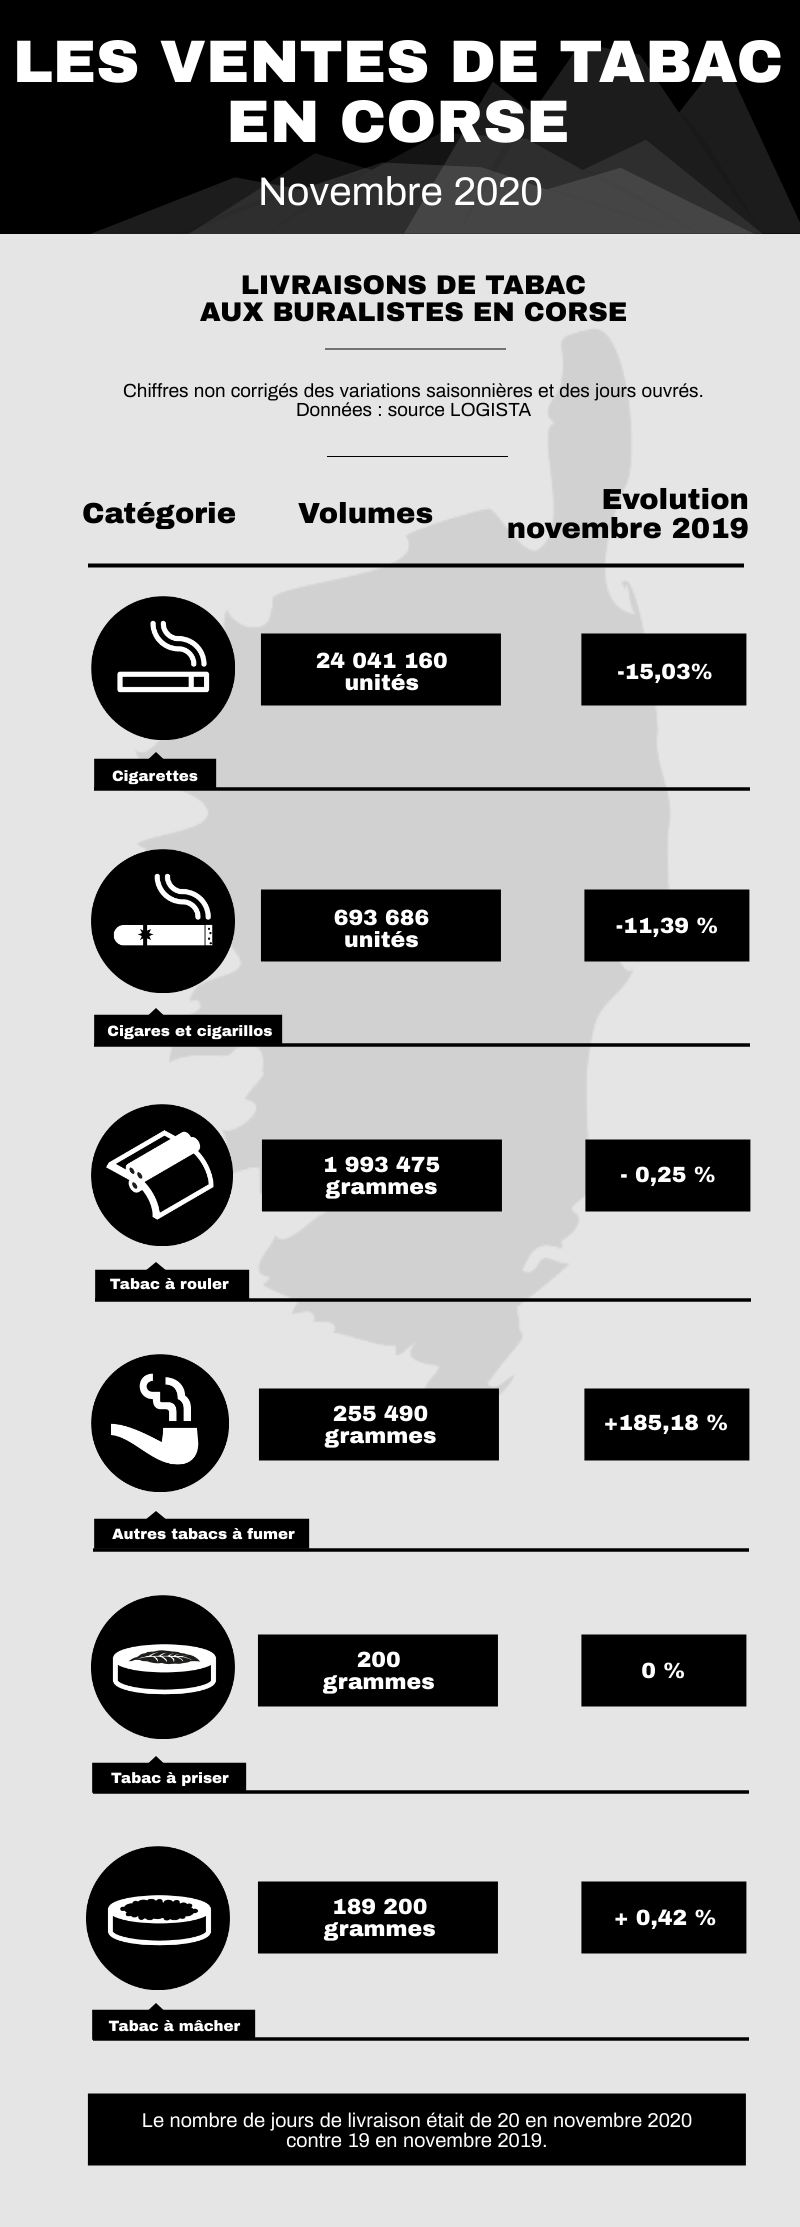 Infographie des ventes de tabacs en Corse en novembre 2020